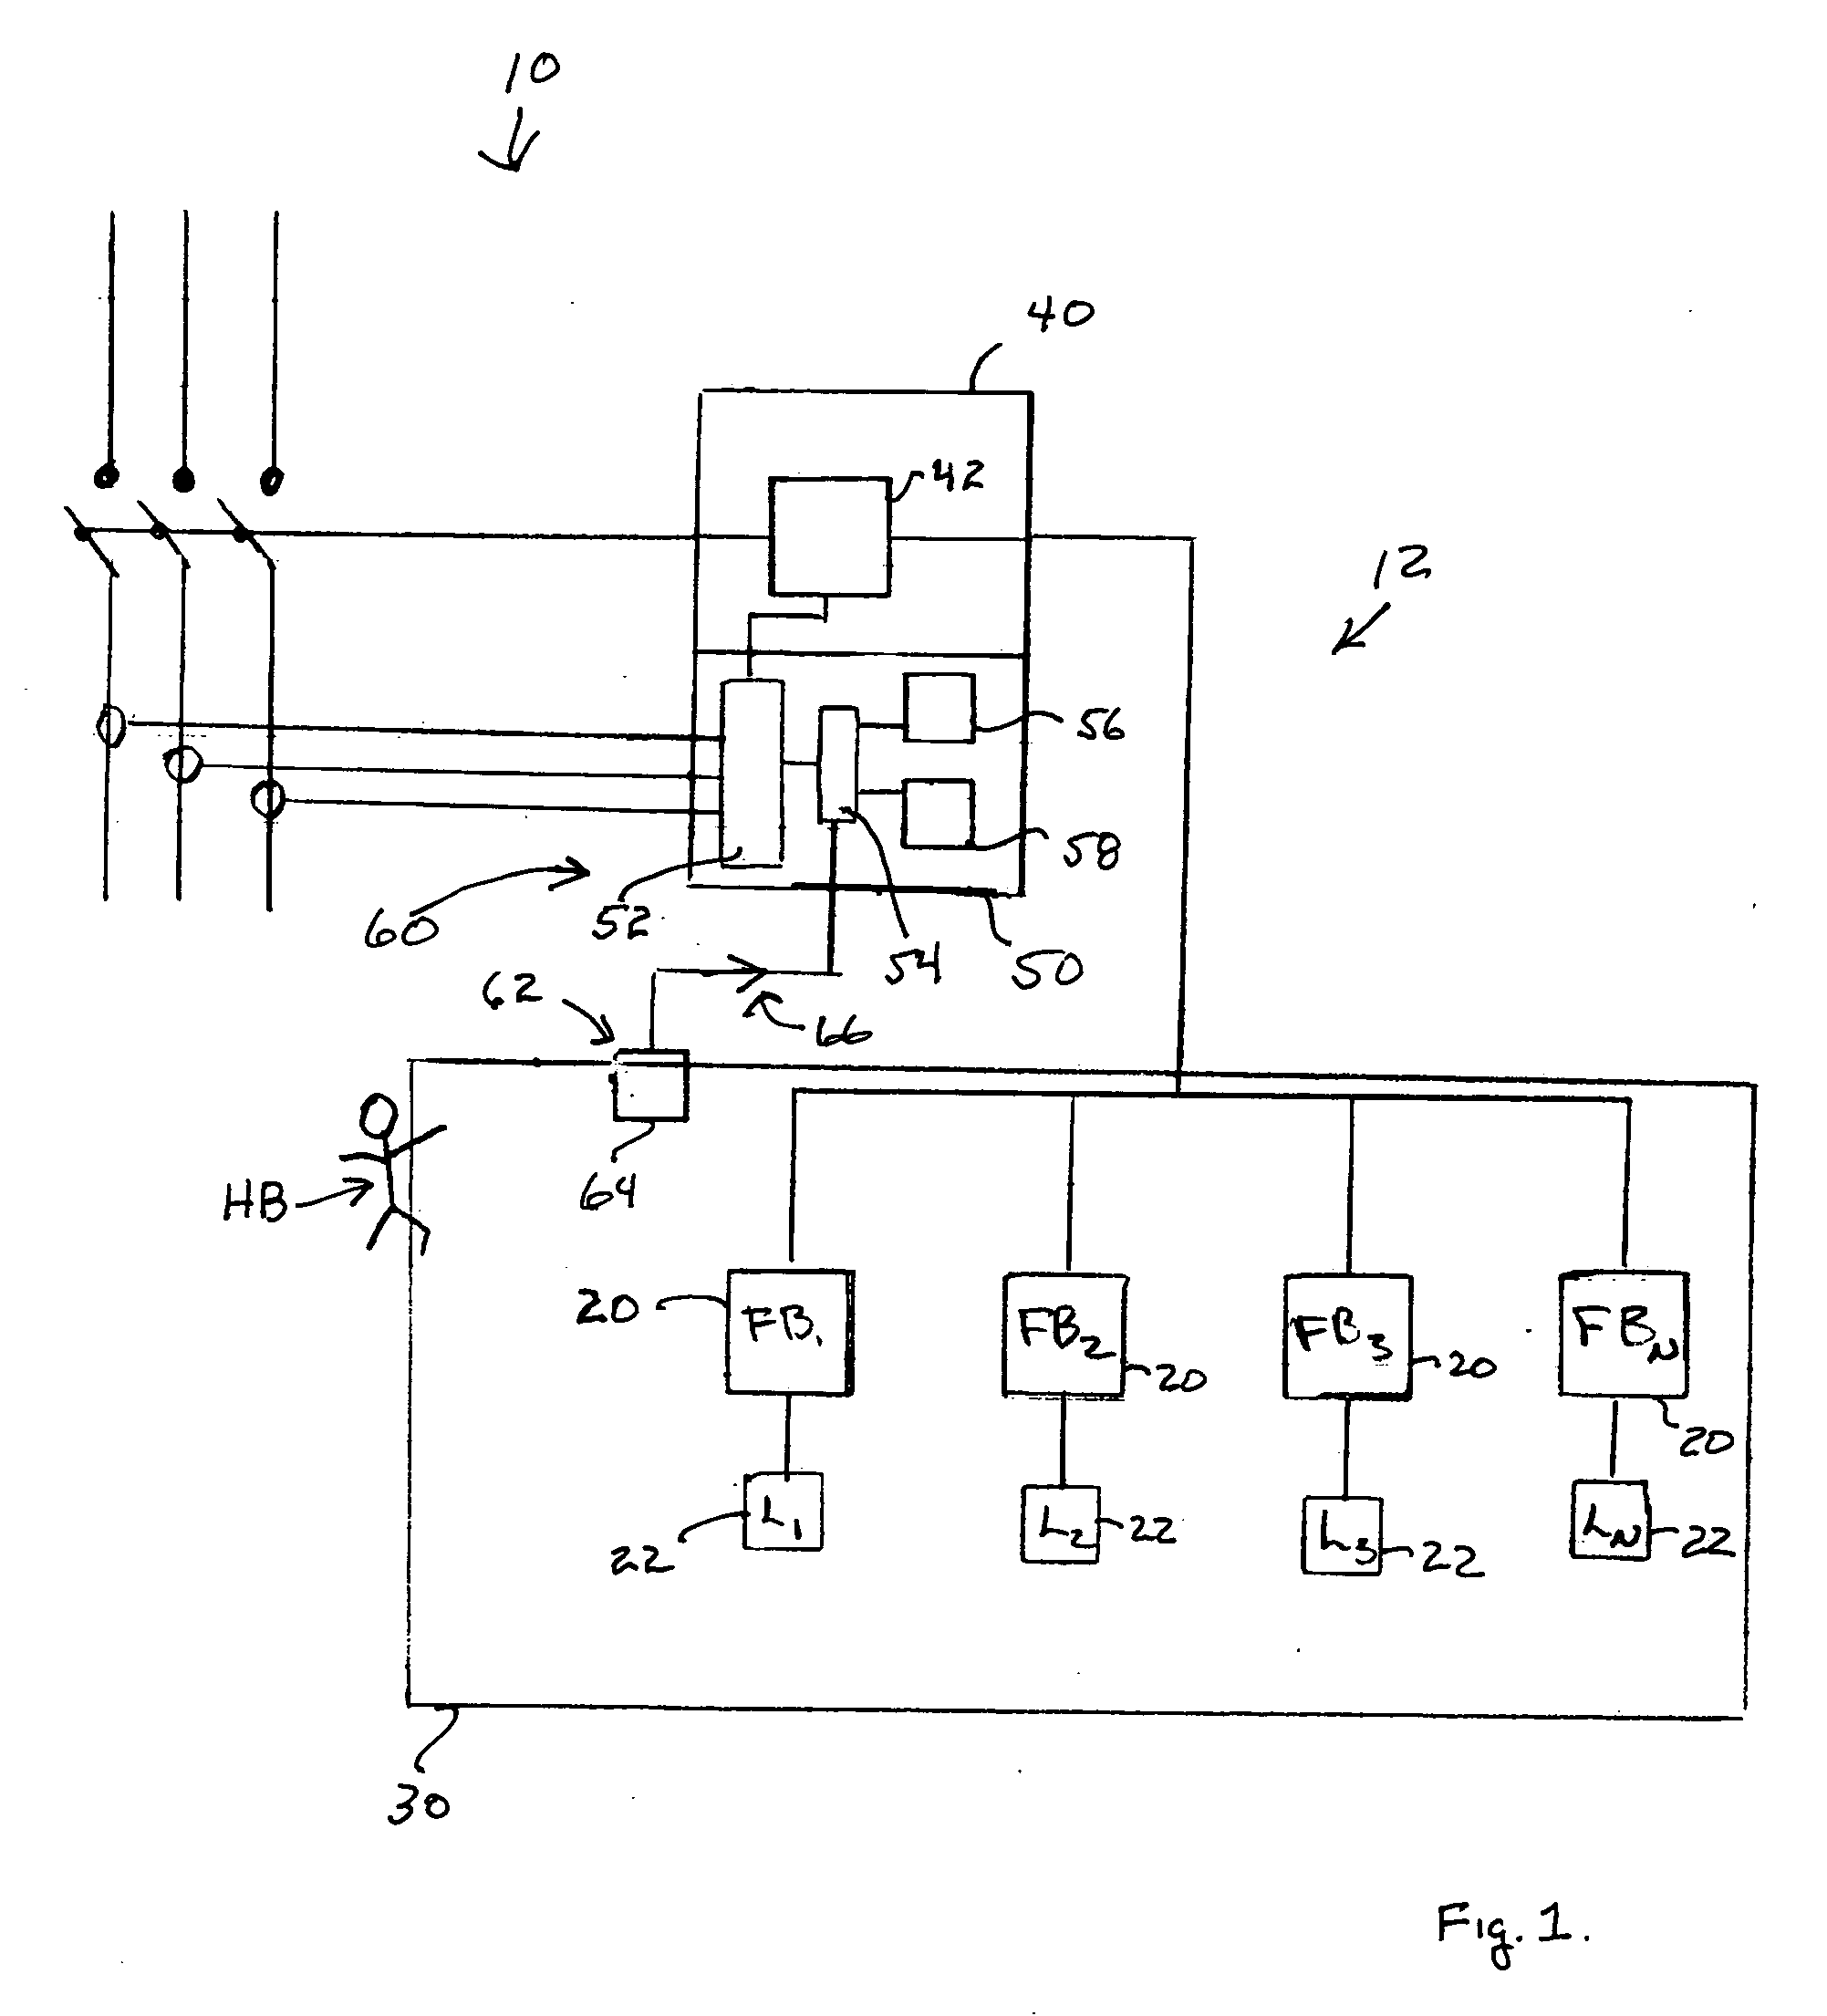 Occupancy-based circuit breaker control